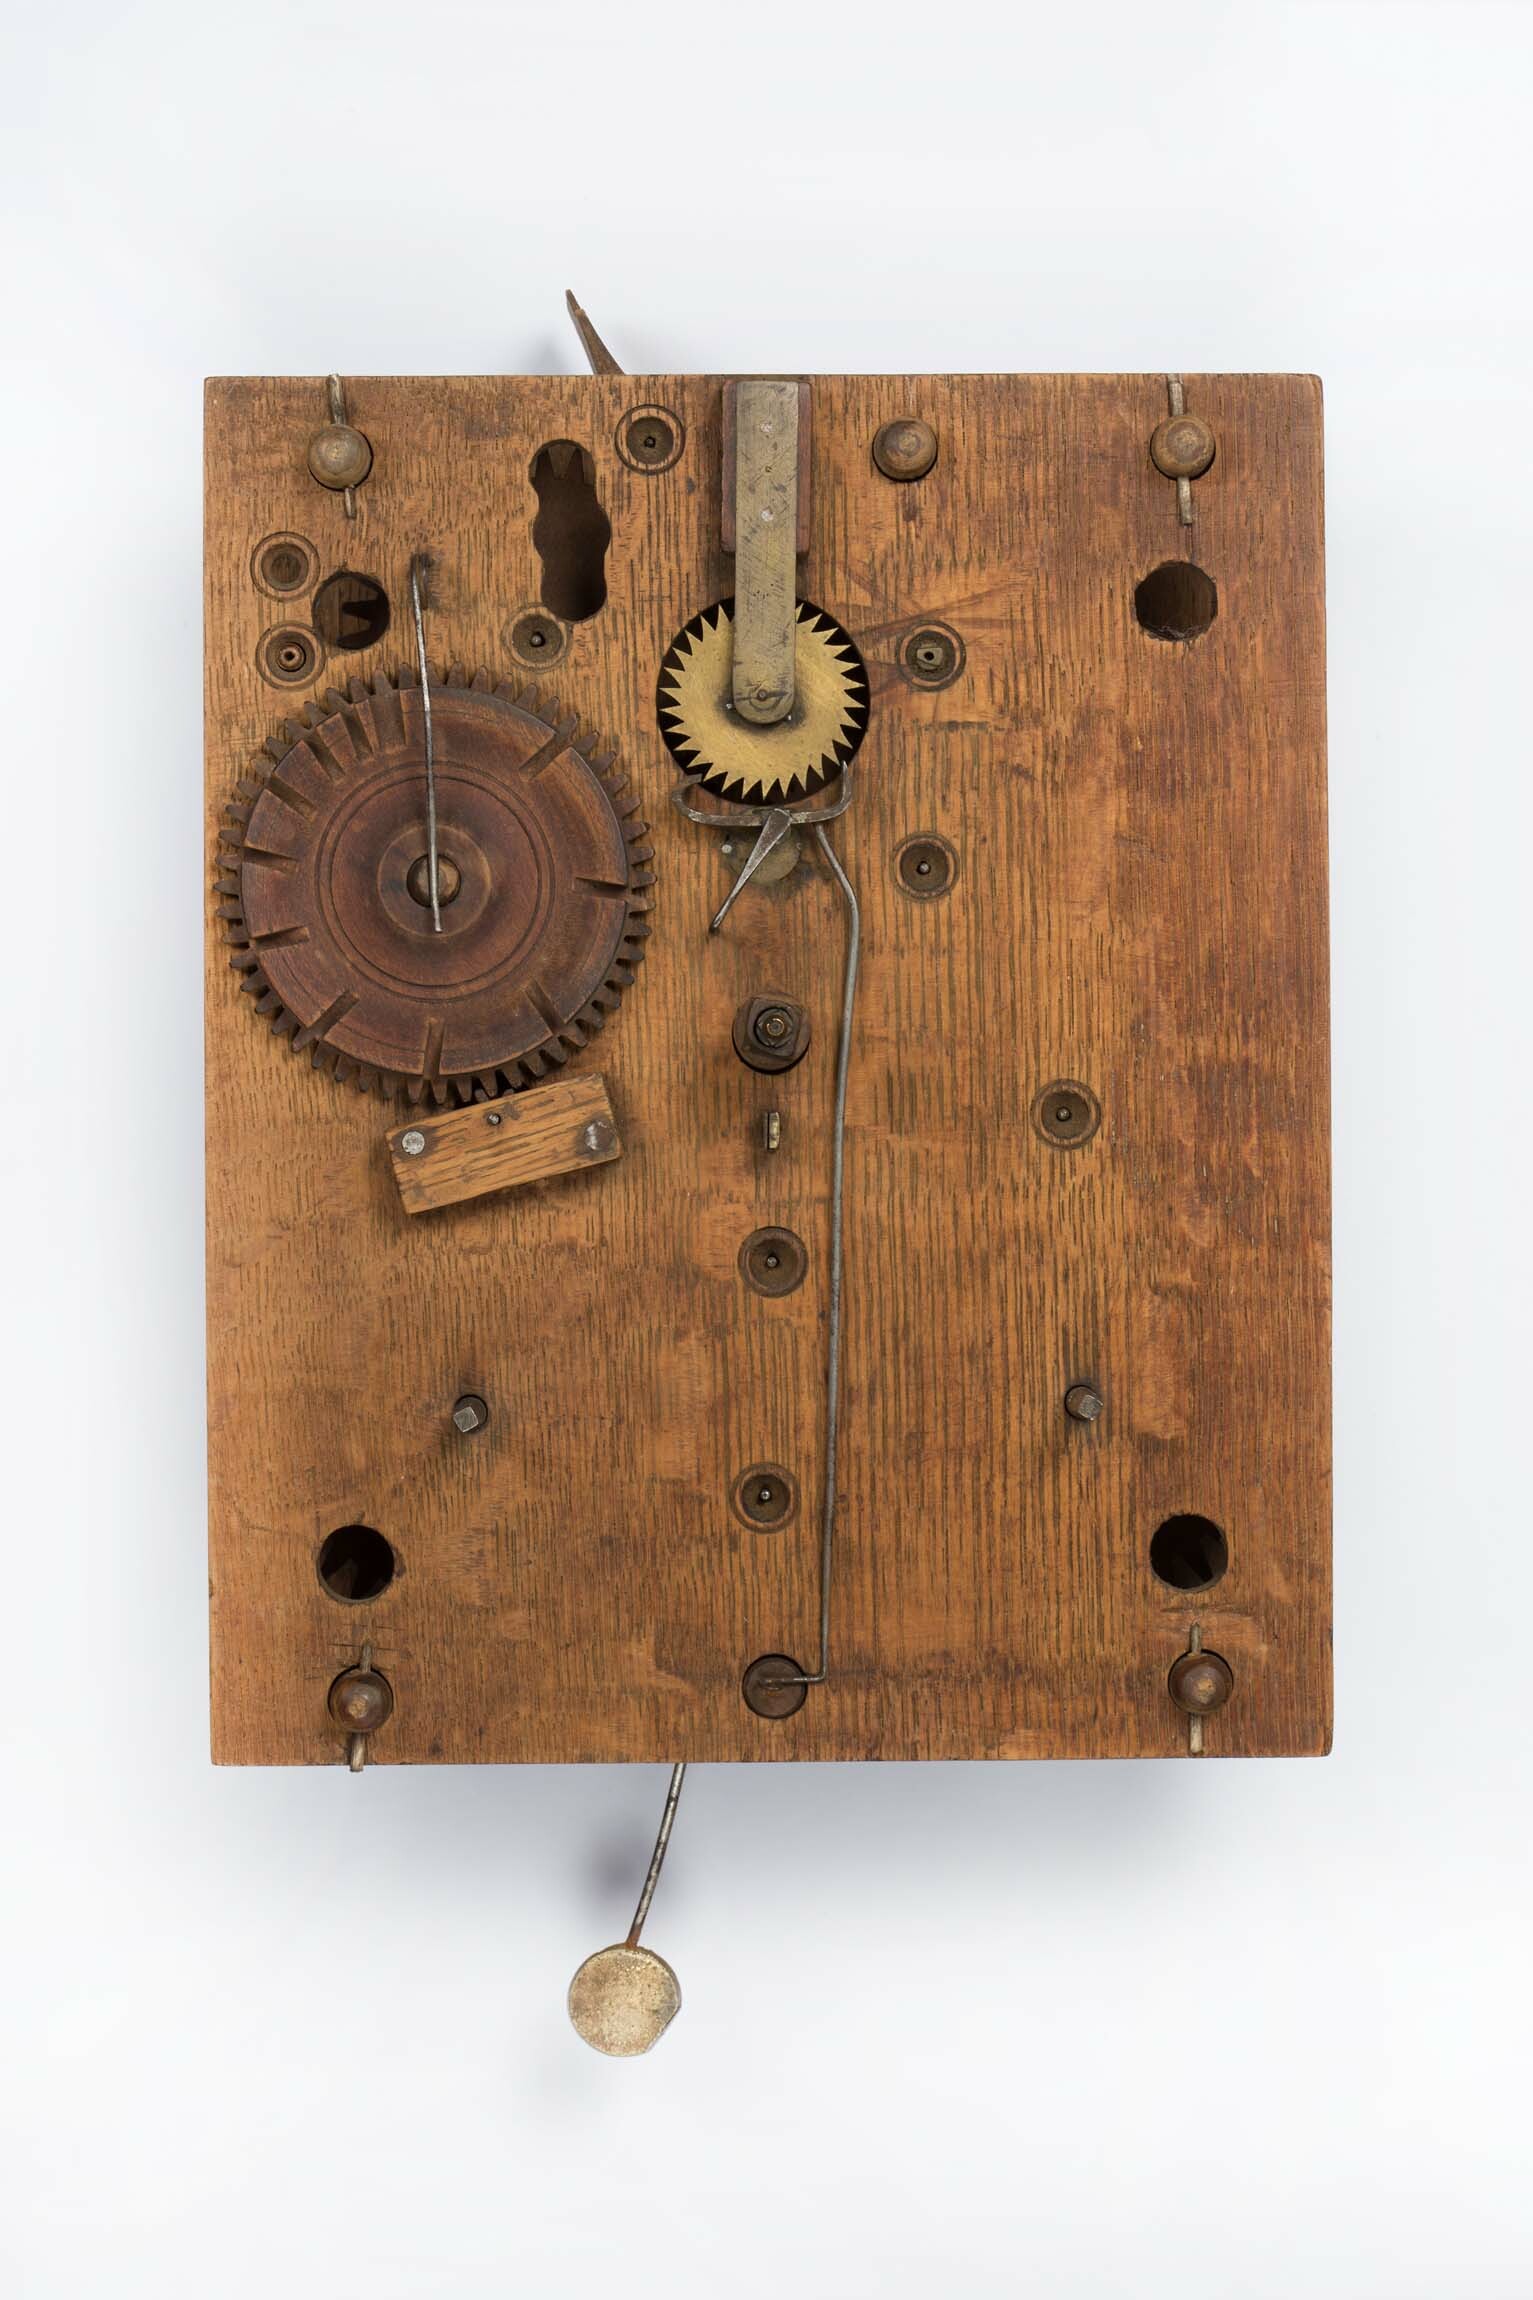 Holzuhrwerk nach Eli Terry, USA, um 1820 (Deutsches Uhrenmuseum CC BY-SA)